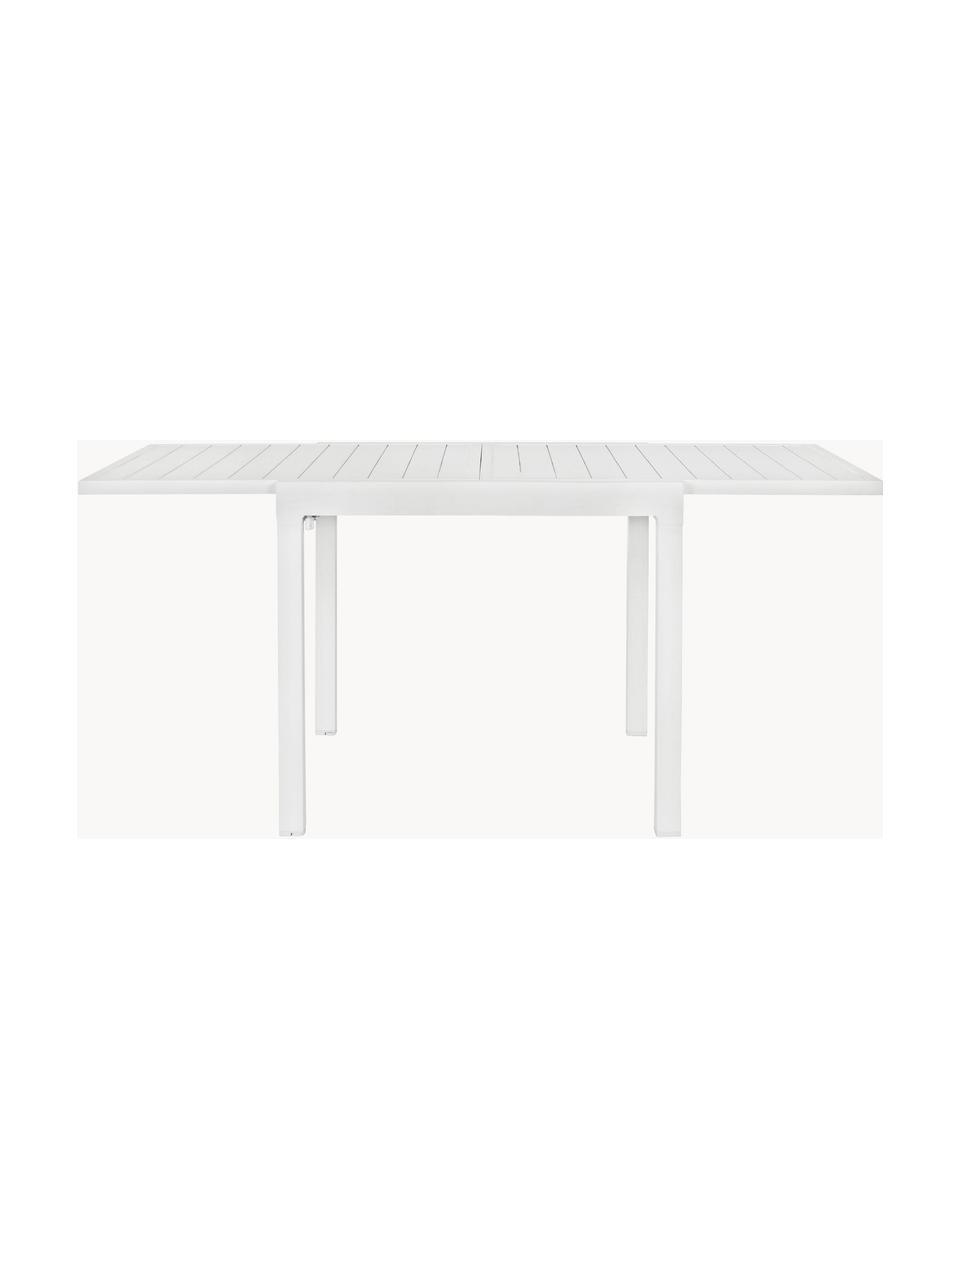 Stół ogrodowy Pelagius, różne rozmiary, Aluminium malowane proszkowo, Biały, S 83/166 x G 80 cm